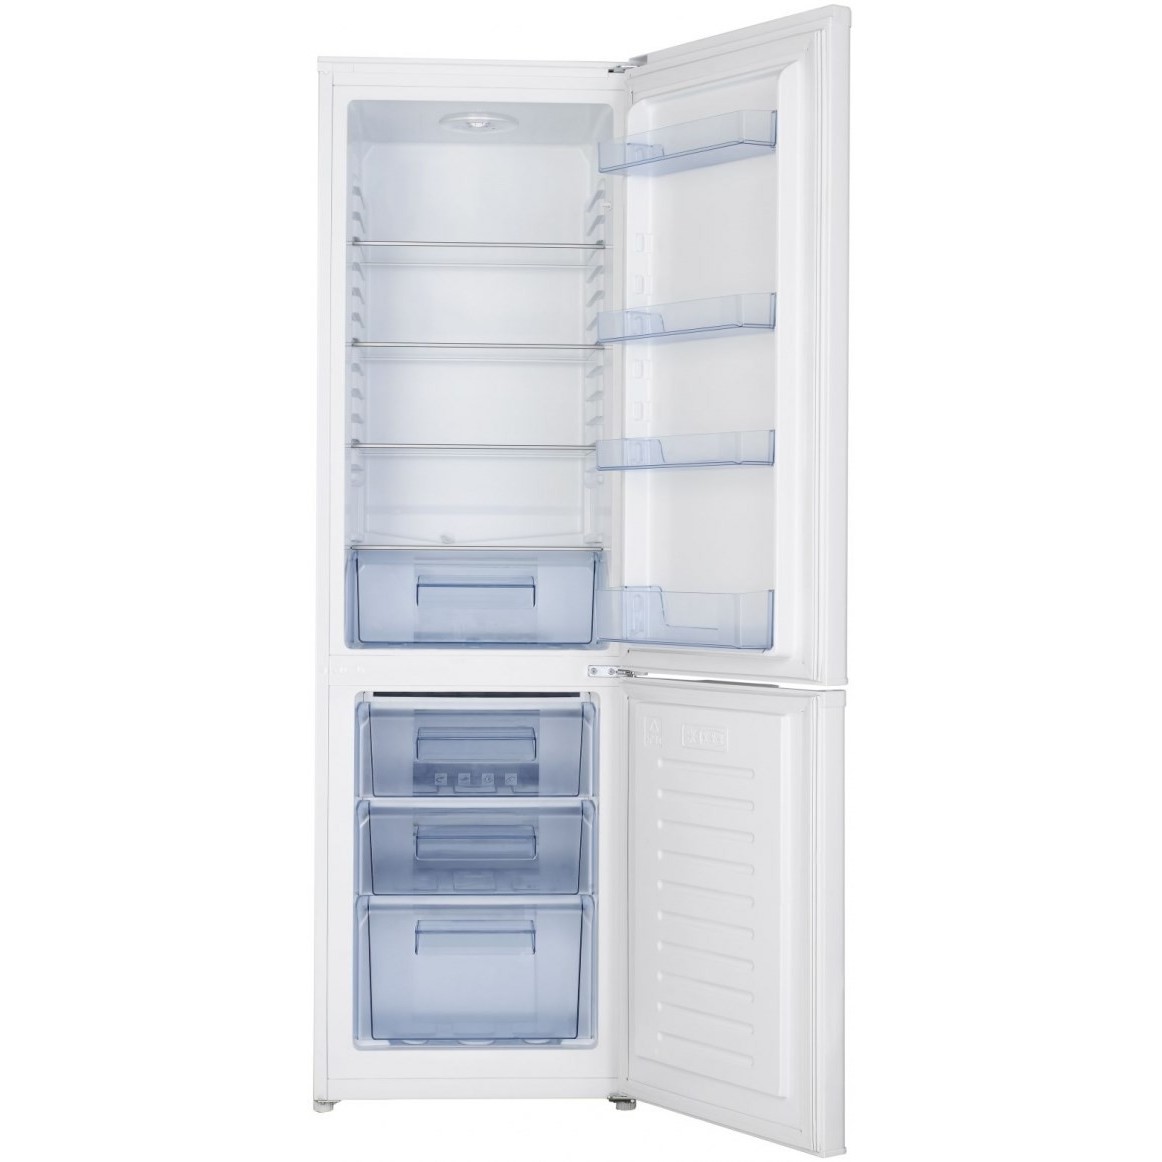 Холодильник Hisense RB-343D4AW1